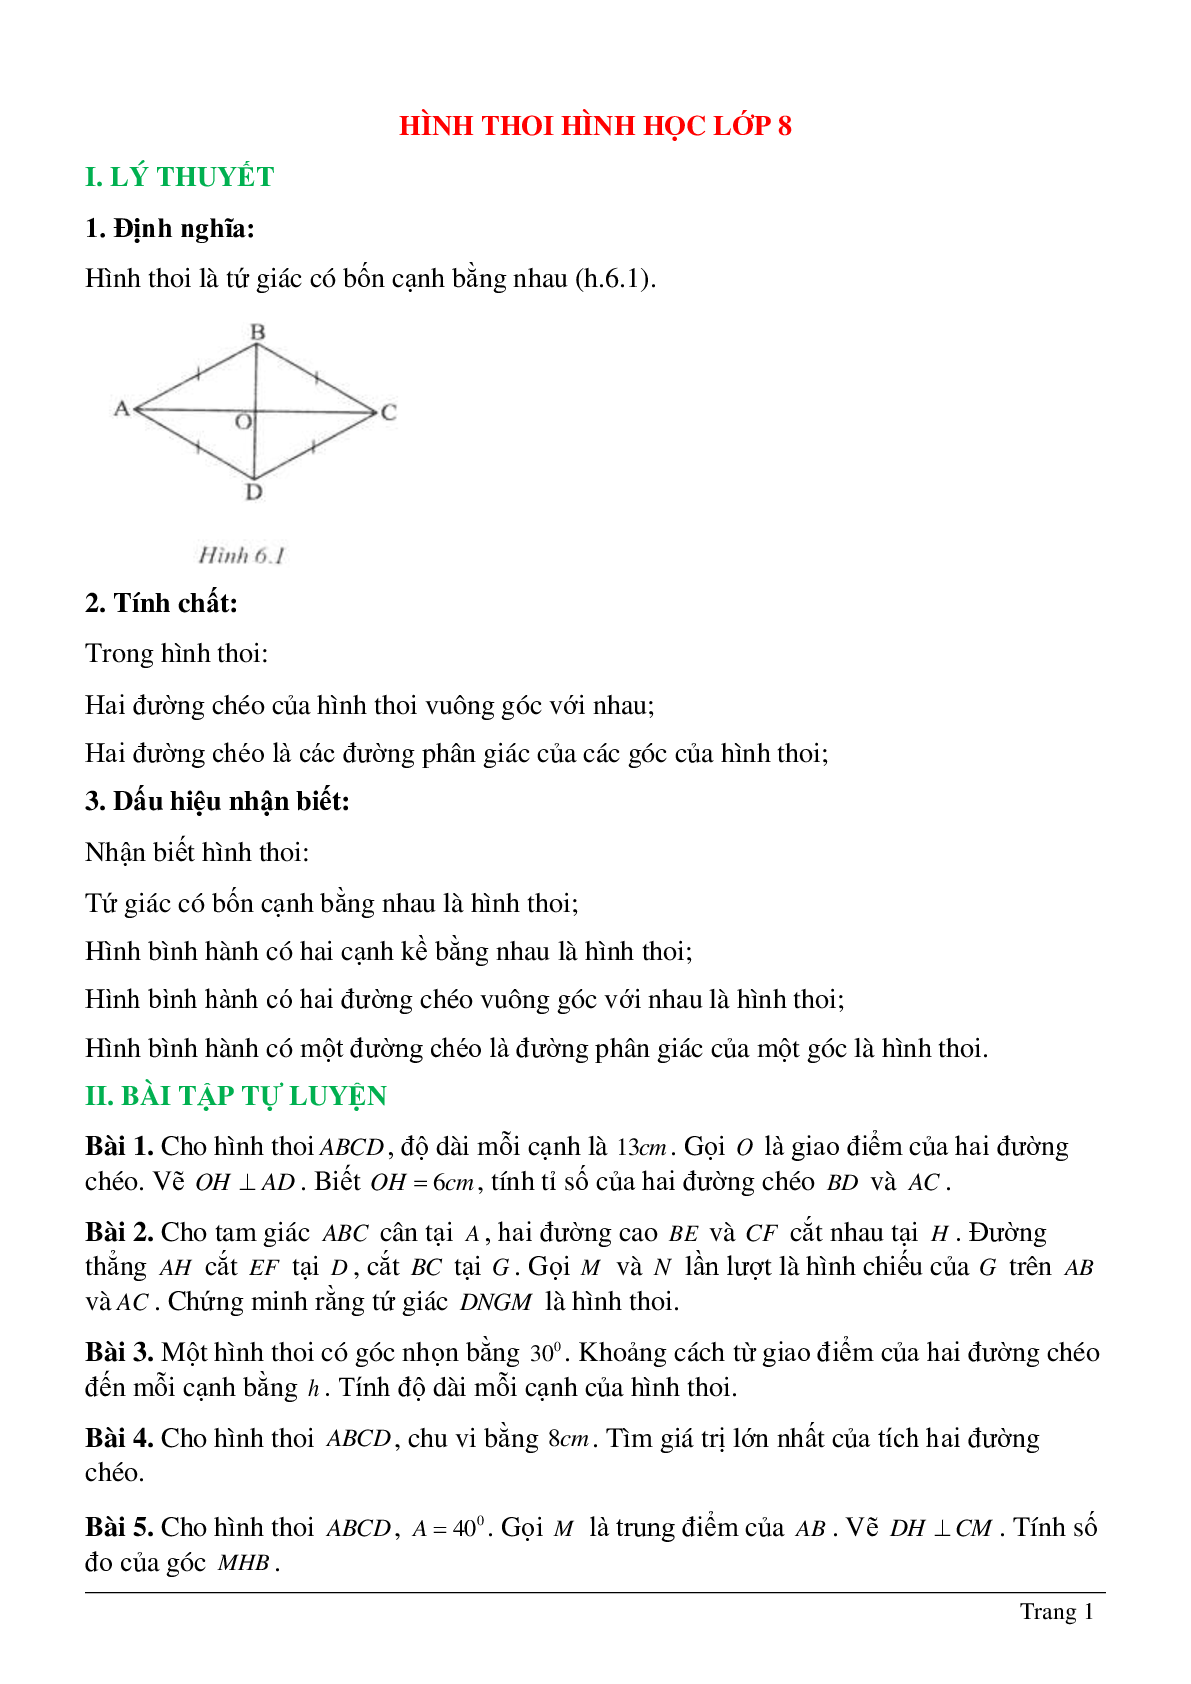 Hình thoi hình học lớp 8 (trang 1)